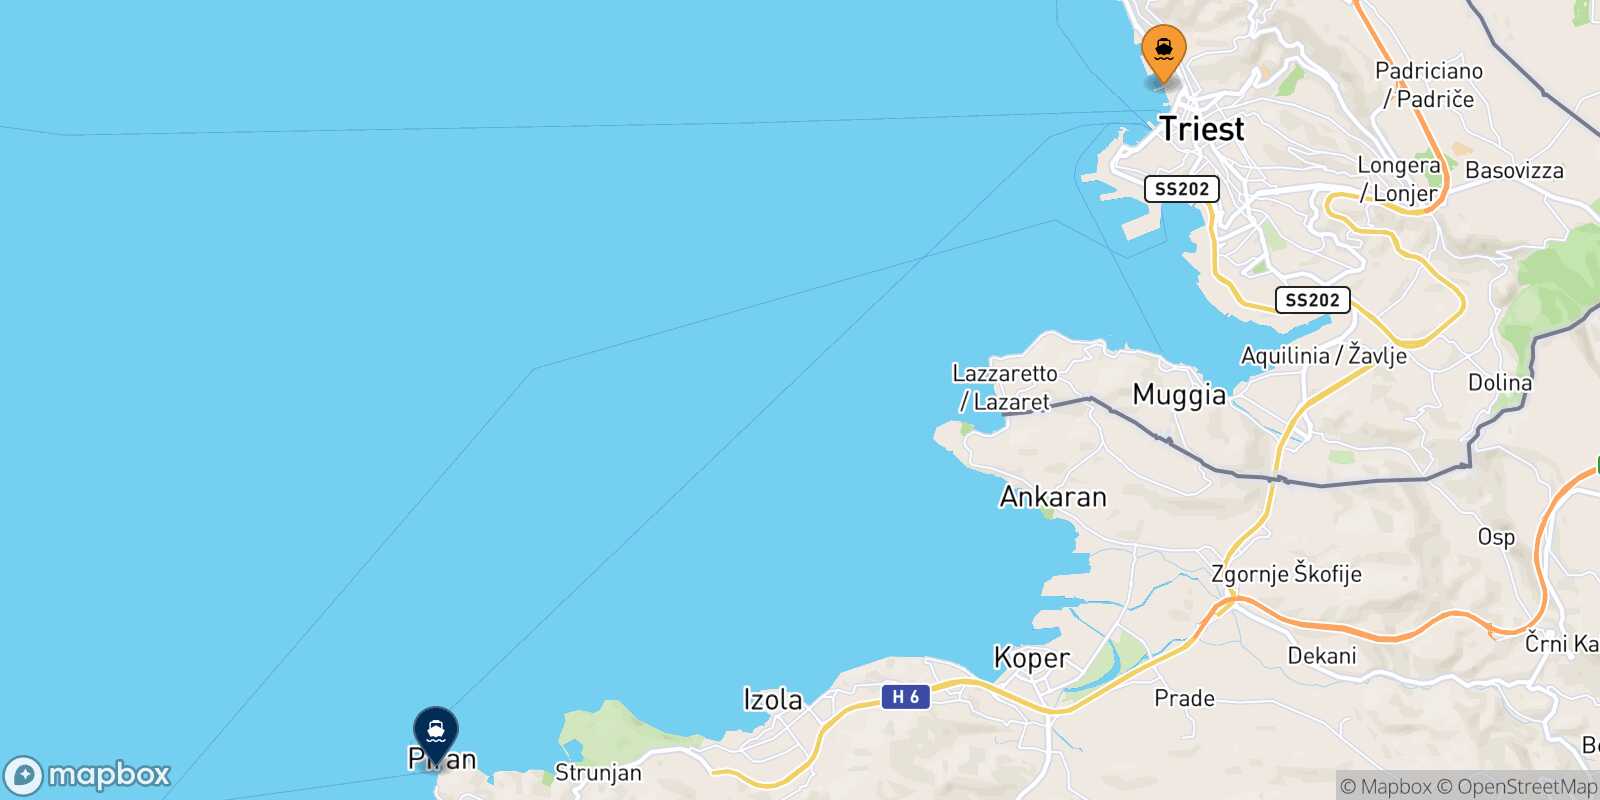 Mapa de la ruta Trieste Piran